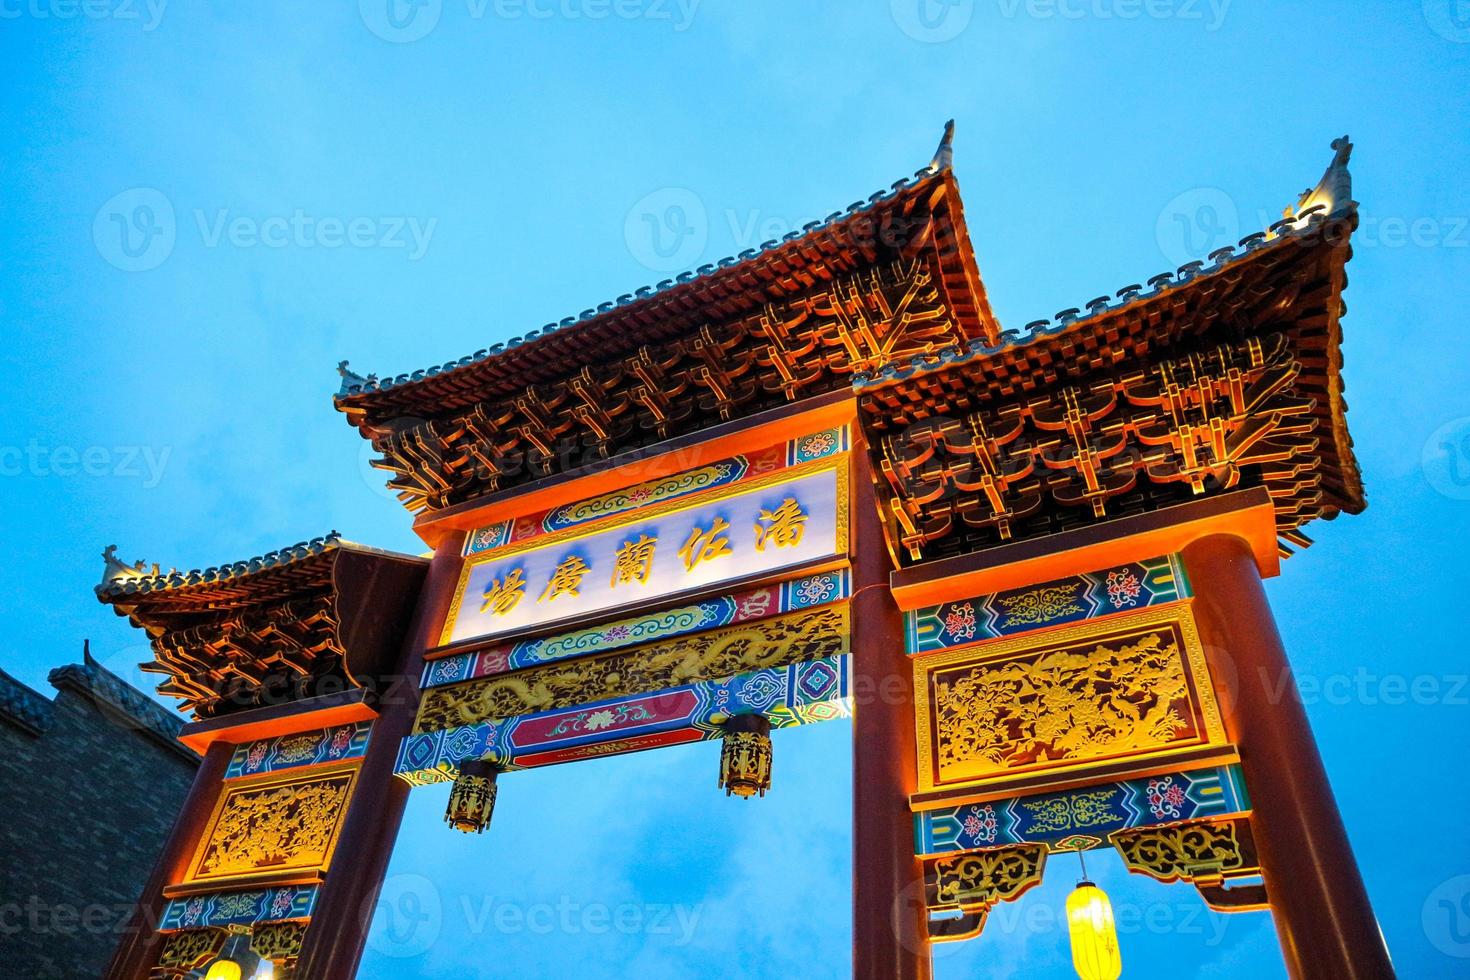 Das Eingangstor von Pantjoran Pik Chinatown mit blauem Himmelshintergrund. foto